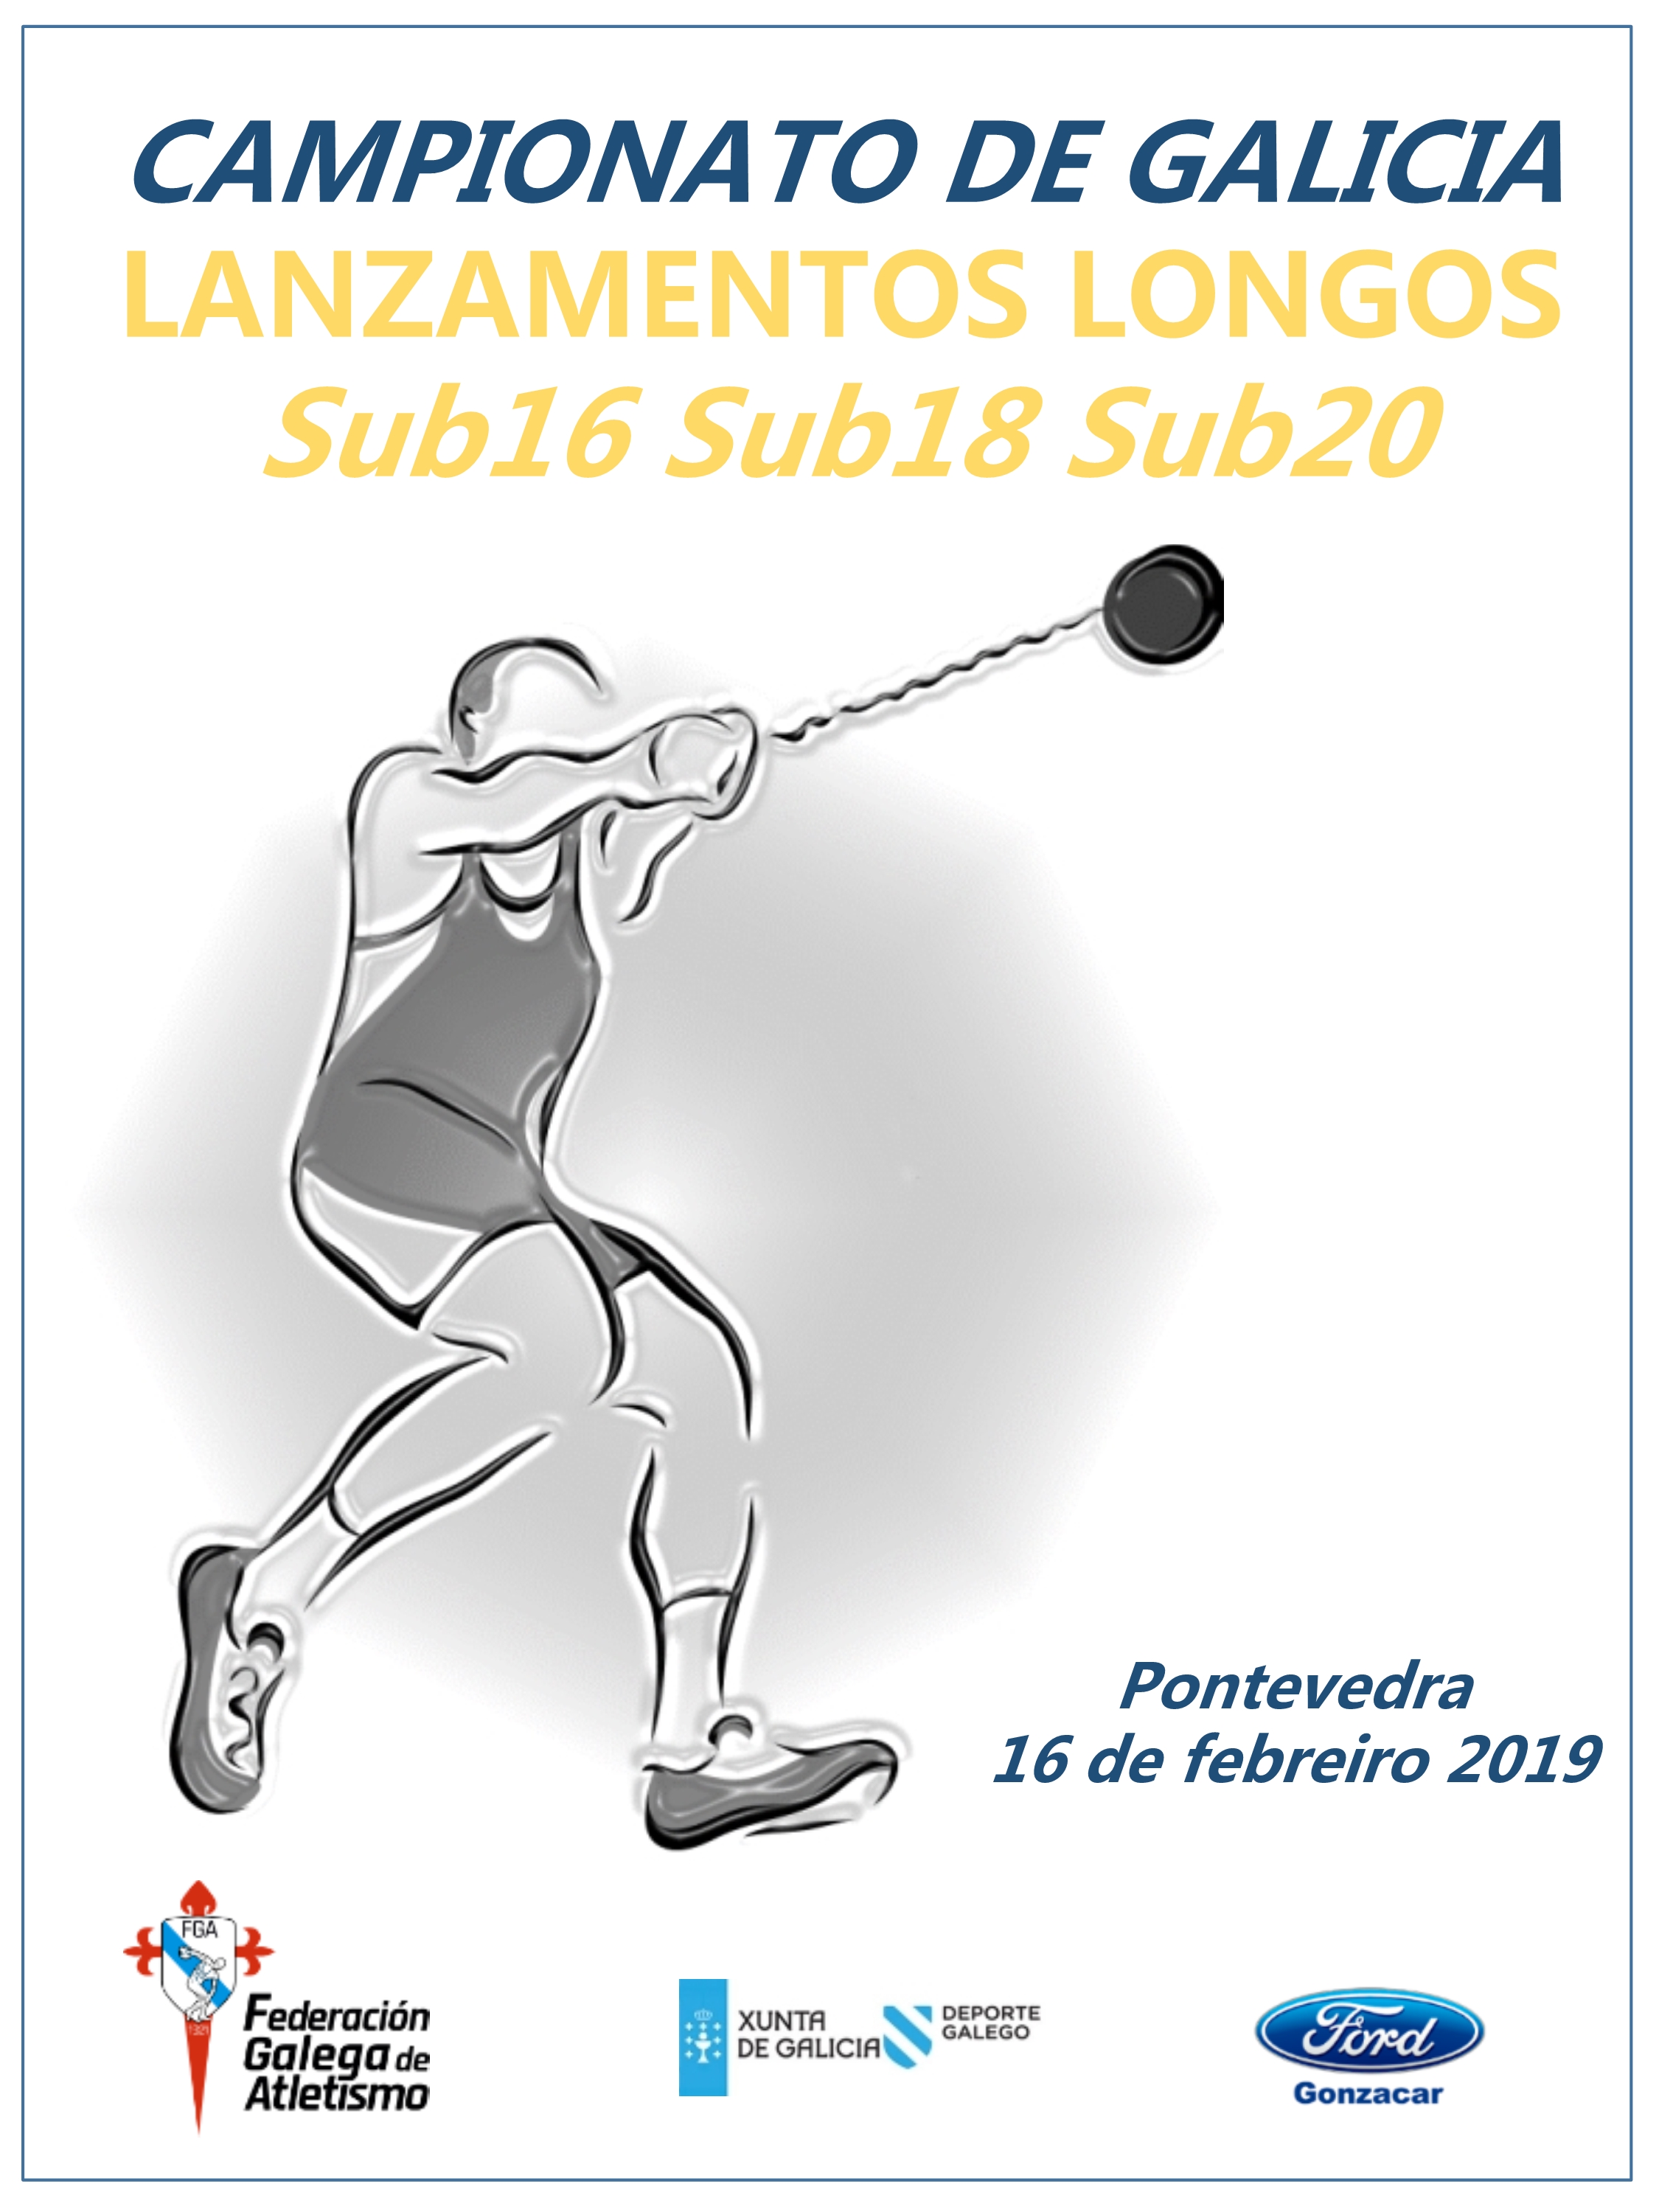 III Campionato de Galicia de Lanzamentos Longos Sub16 – Sub18 – II Campionato de Galicia de Lanzamentos Longos Sub20